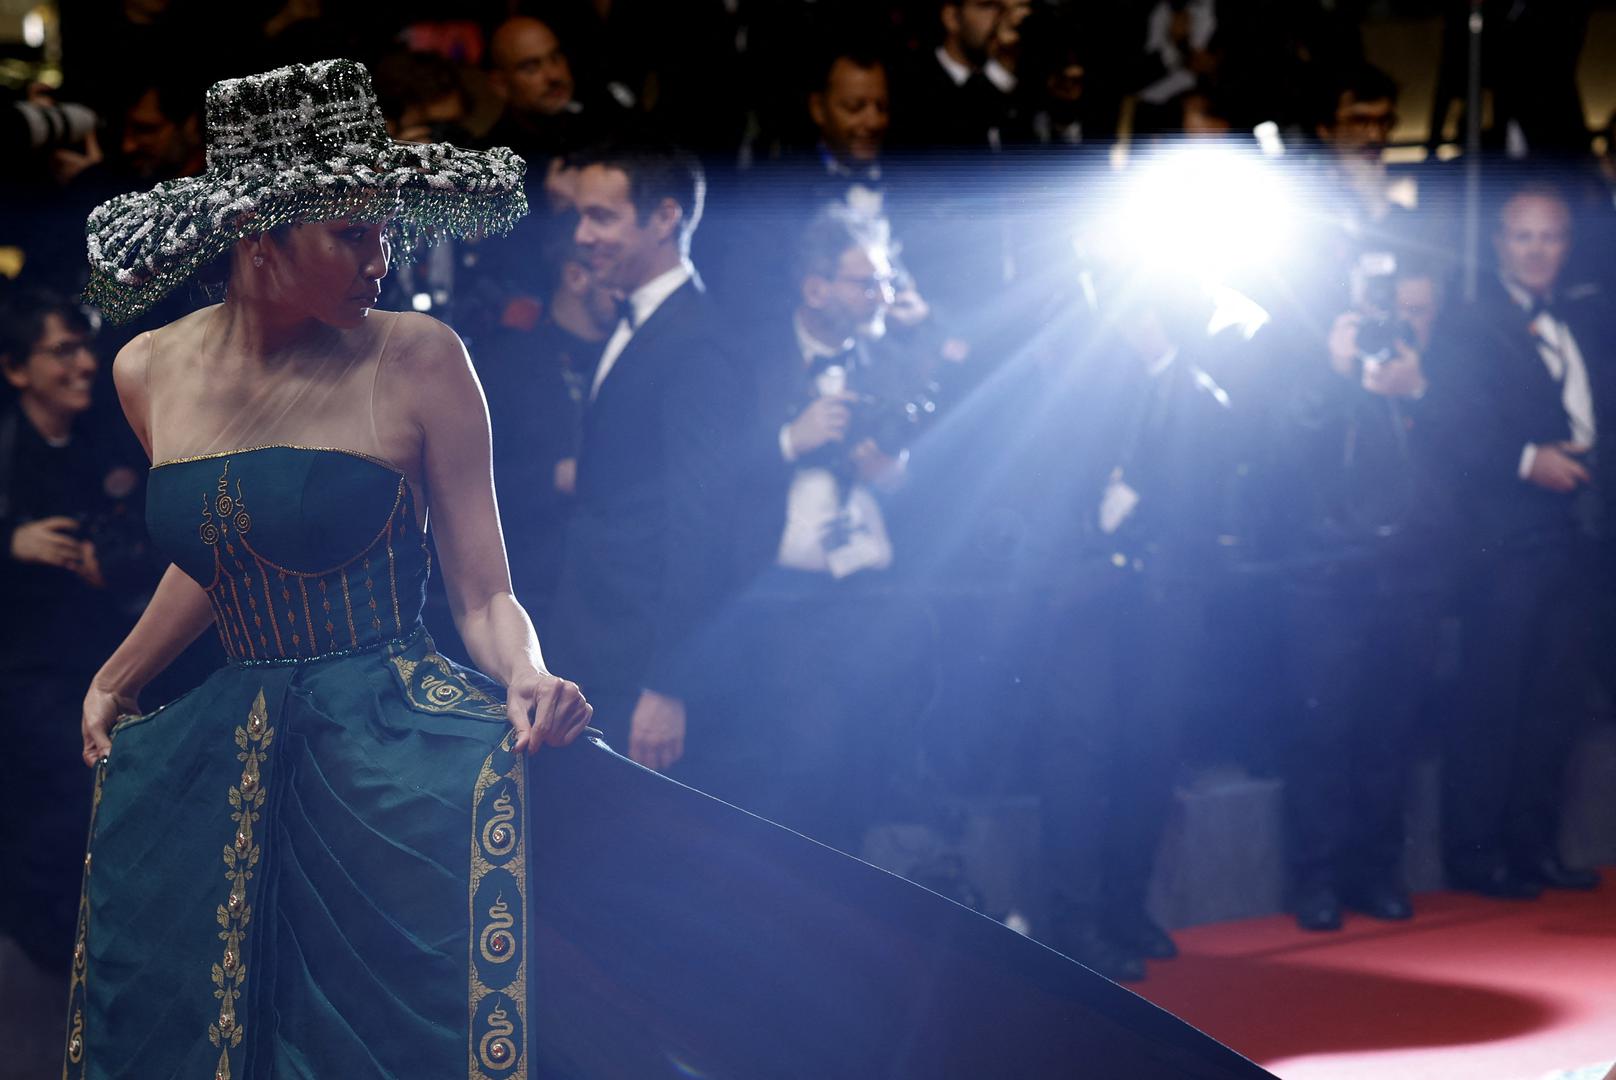 Kambodžanska glumica Mean Sonyta pojavila se ovih dana na festivalu u Cannesu u haljini inspiriranoj kulturom njene zemlje.